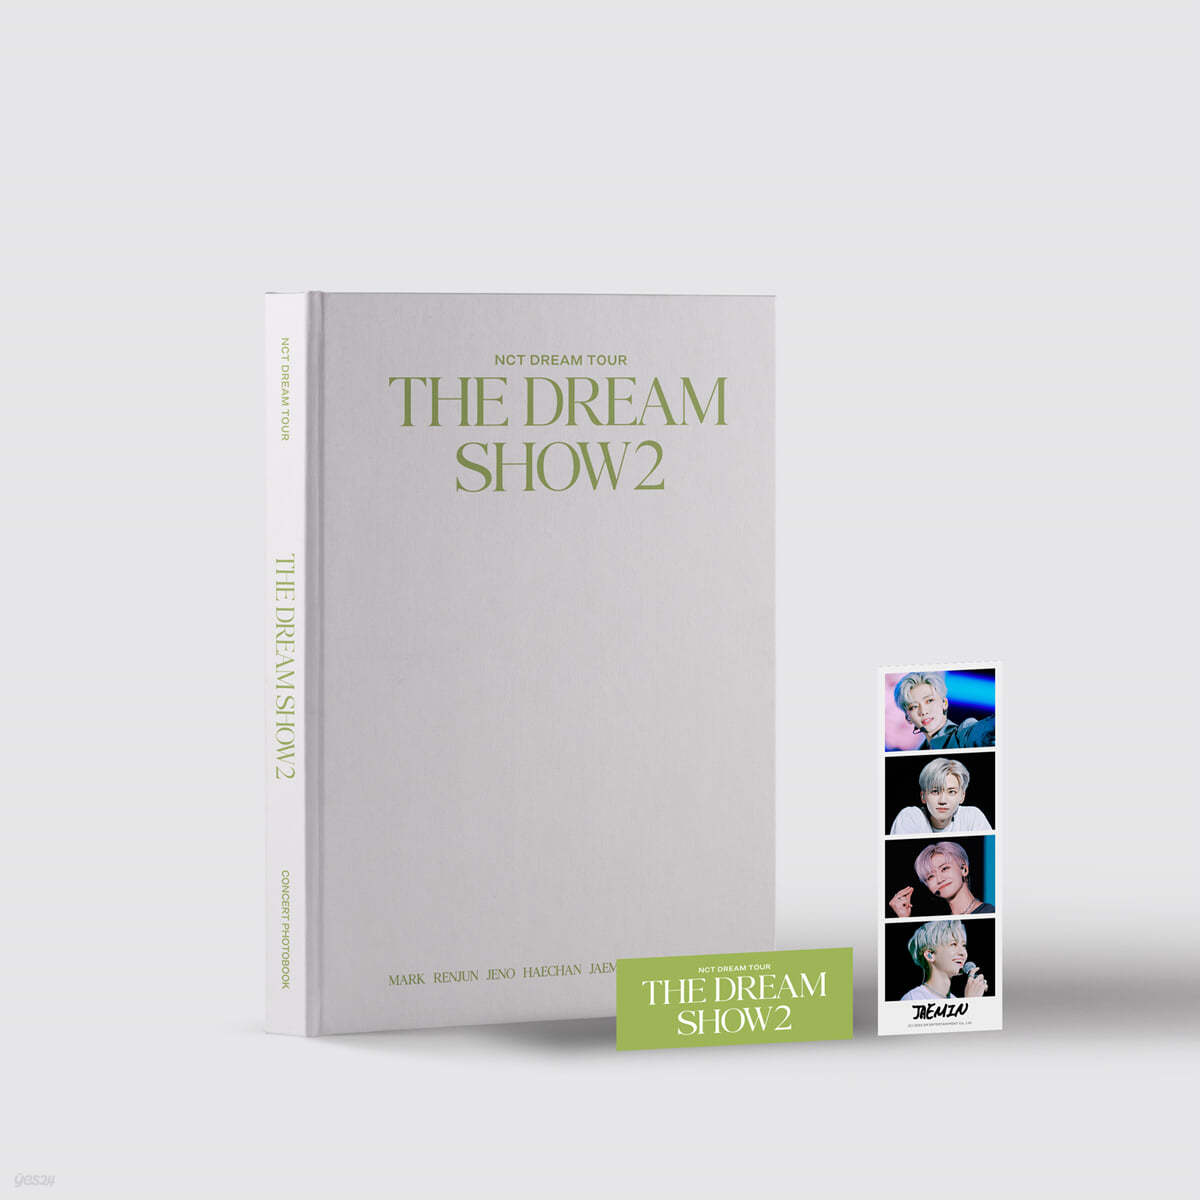 엔시티 드림 (NCT DREAM) - NCT DREAM TOUR 'THE DREAM SHOW2' CONCERT PHOTOBOOK